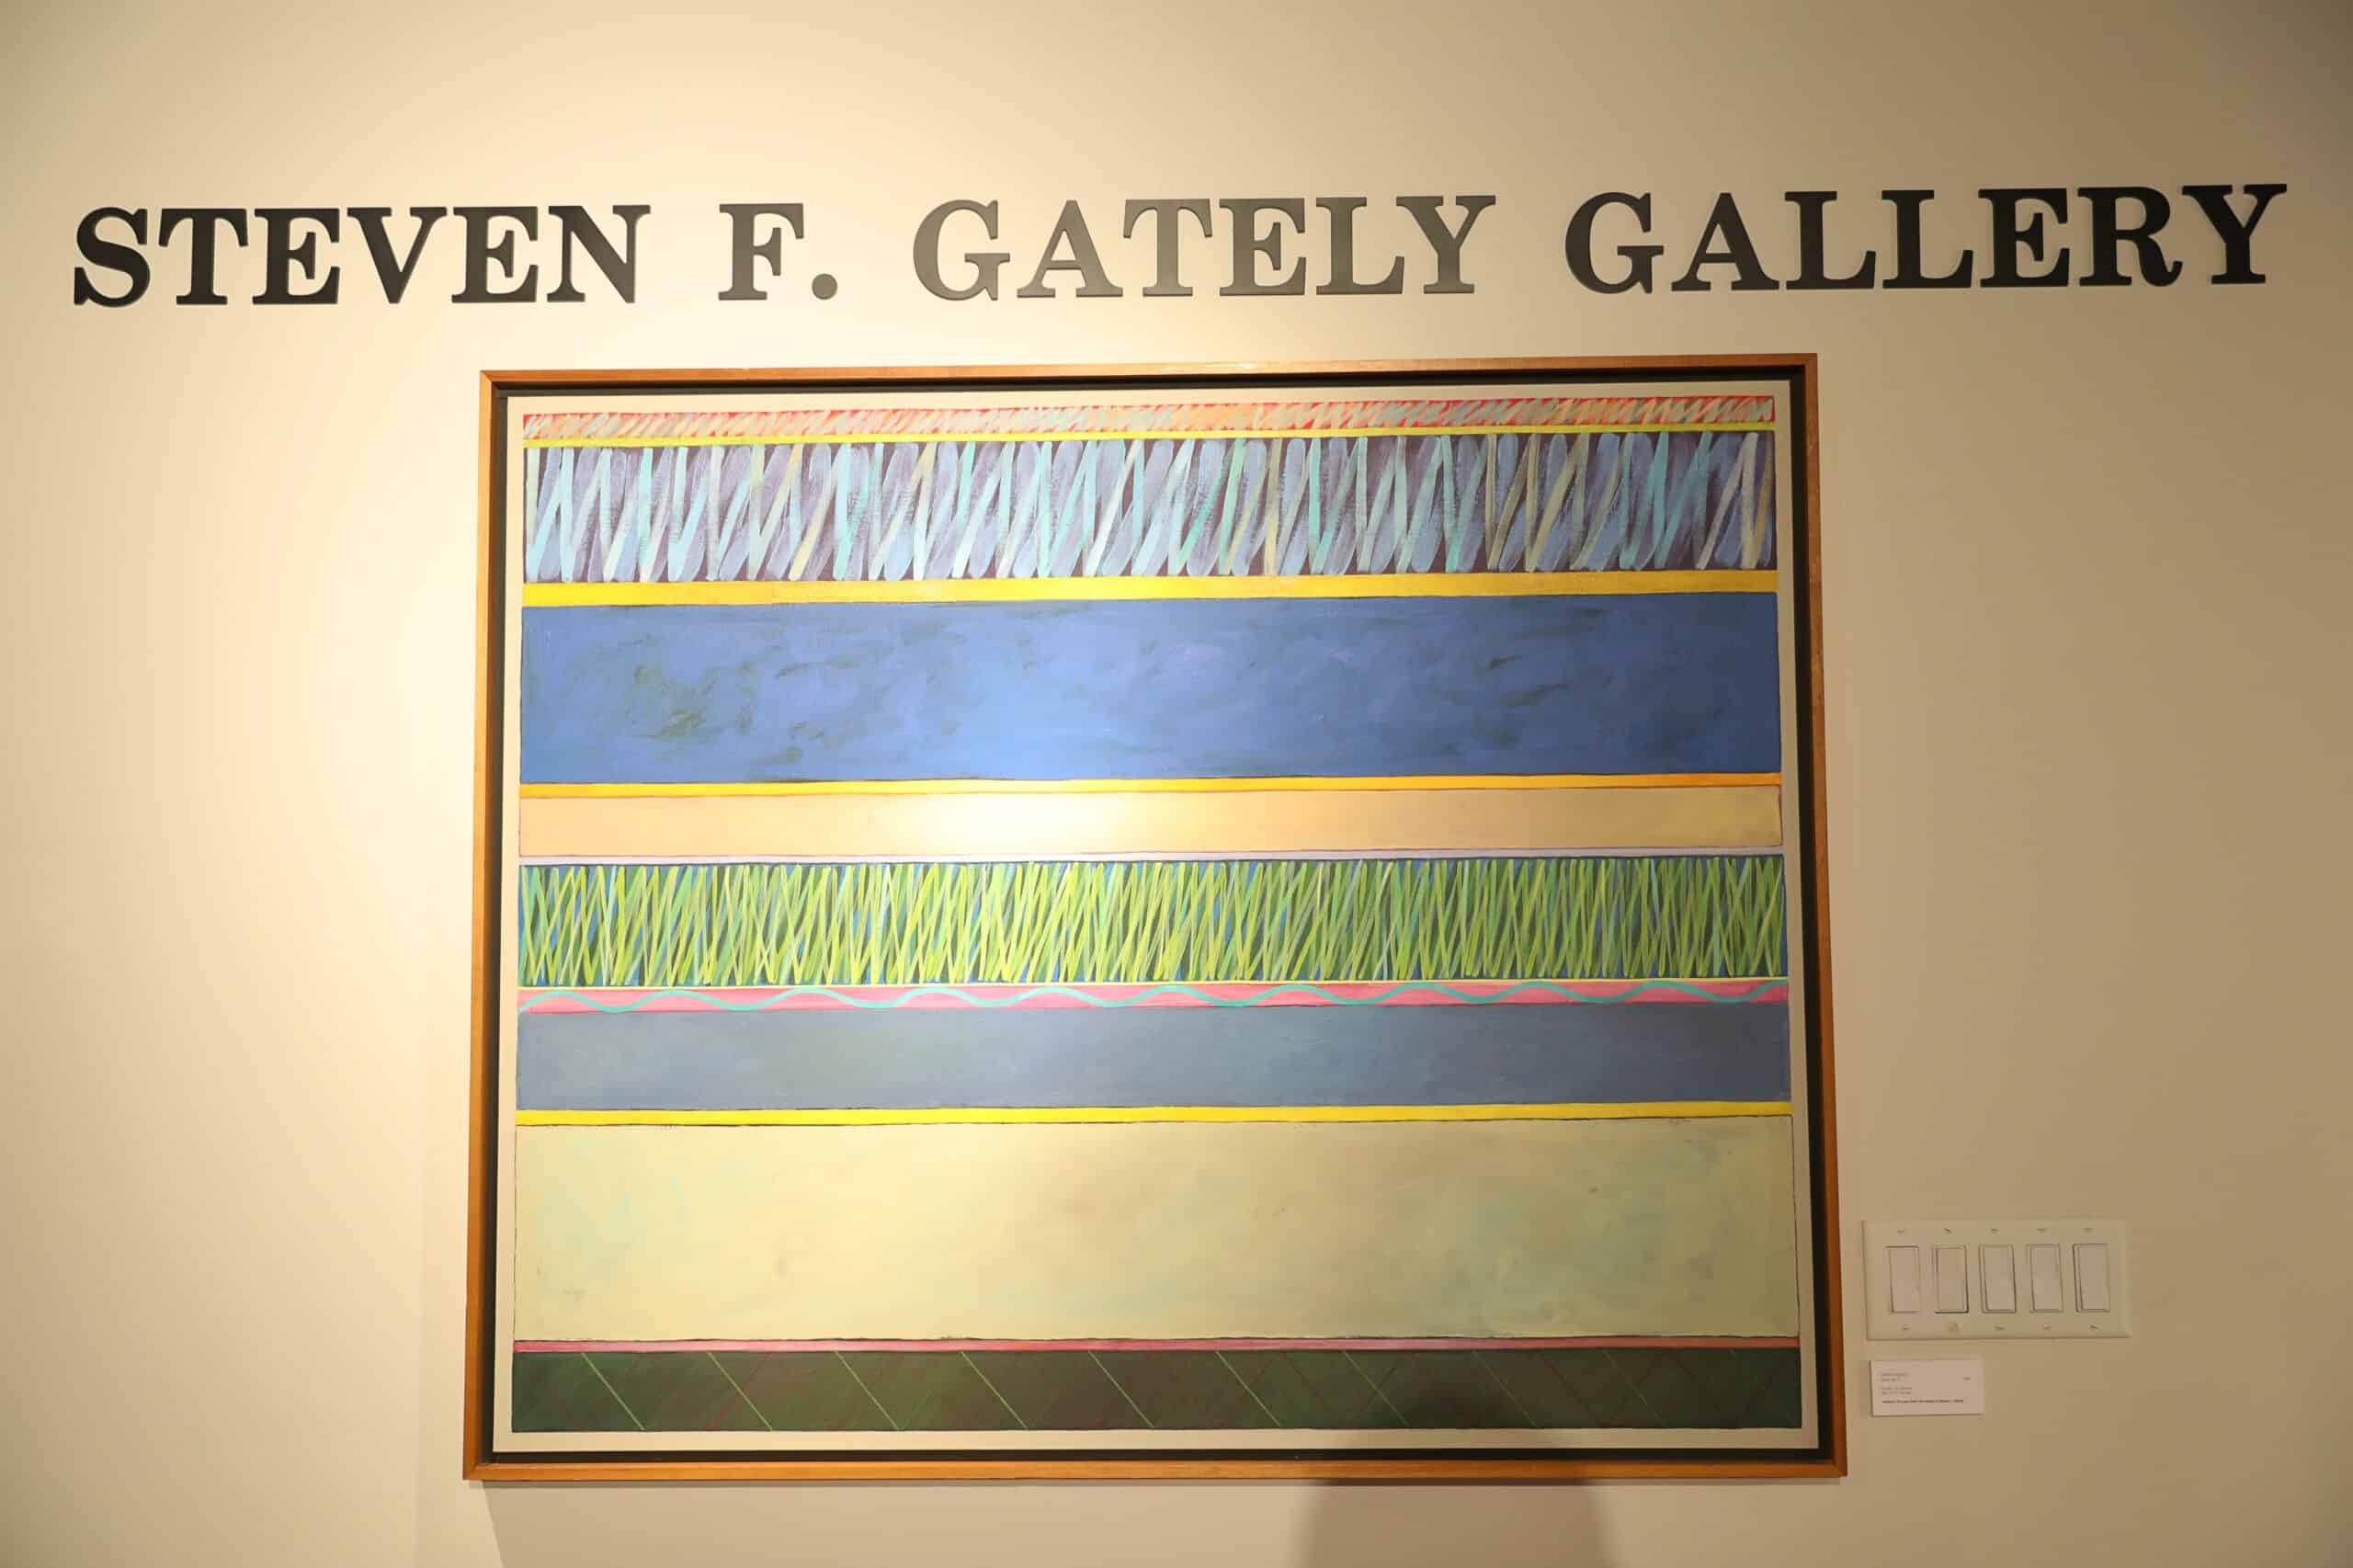 Gately Gallery Exhibits